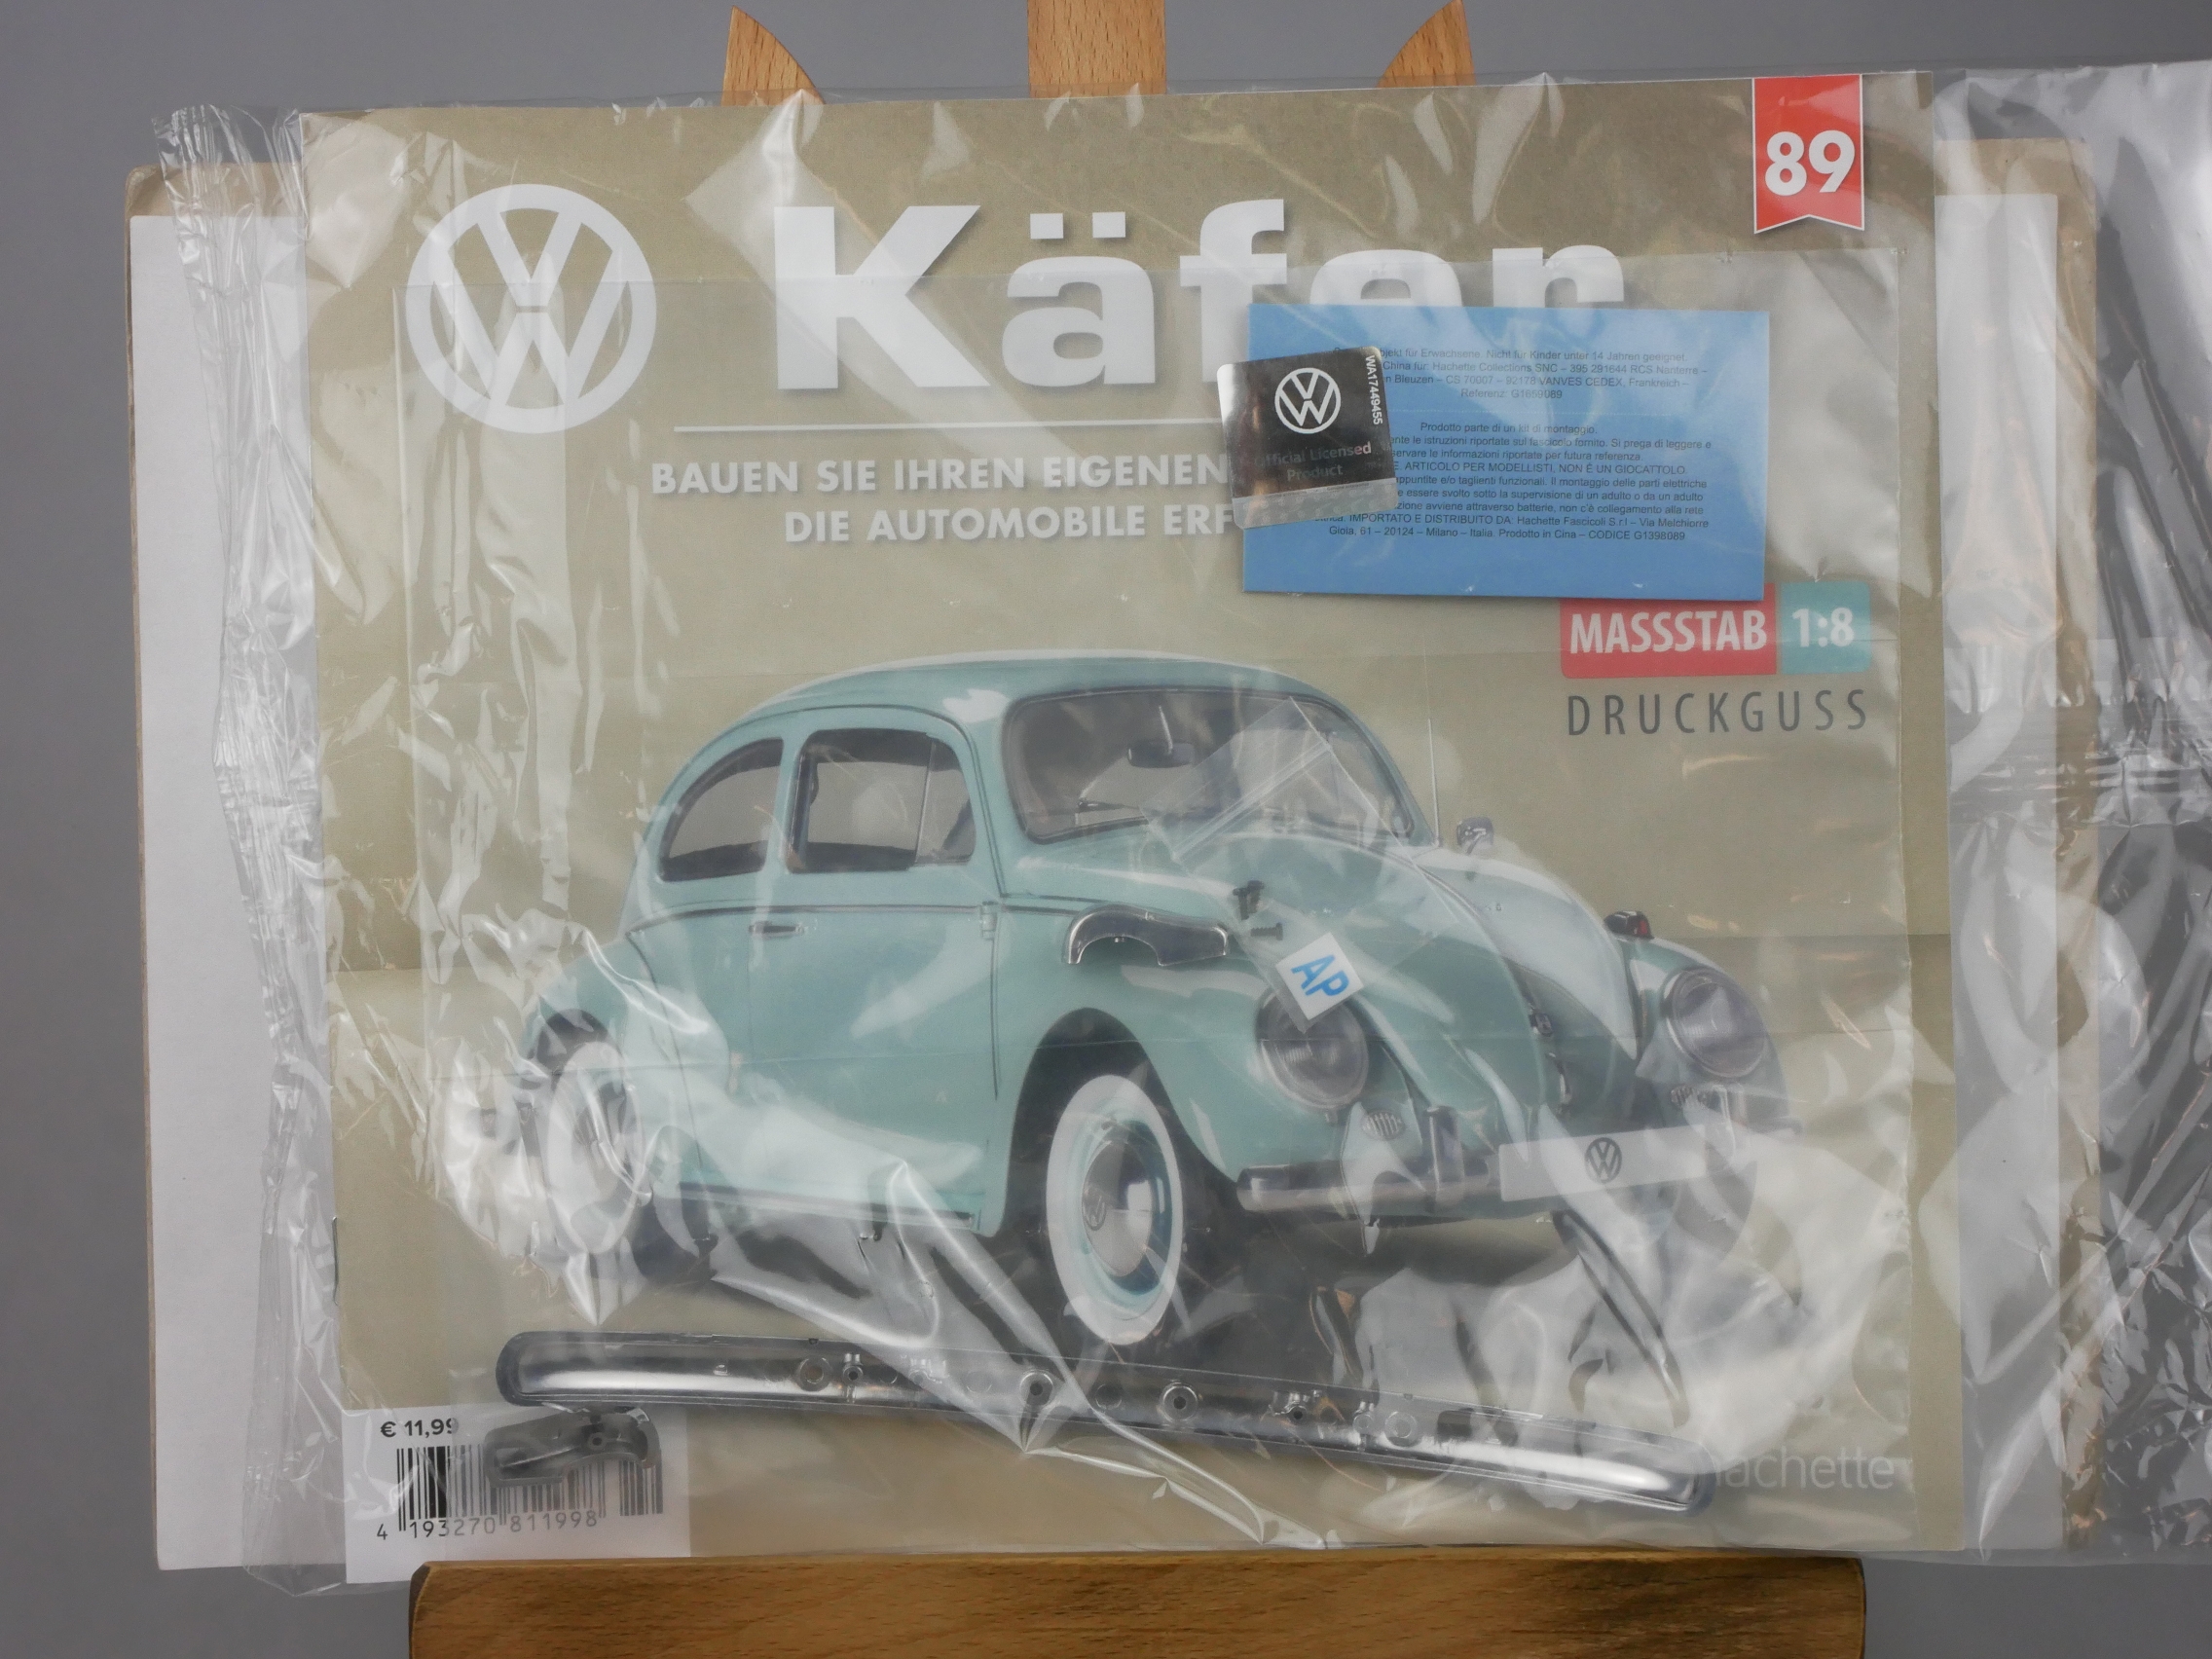  Ausgabe 89 Volkswagen VW Käfer 1/8 Hachette - 126456